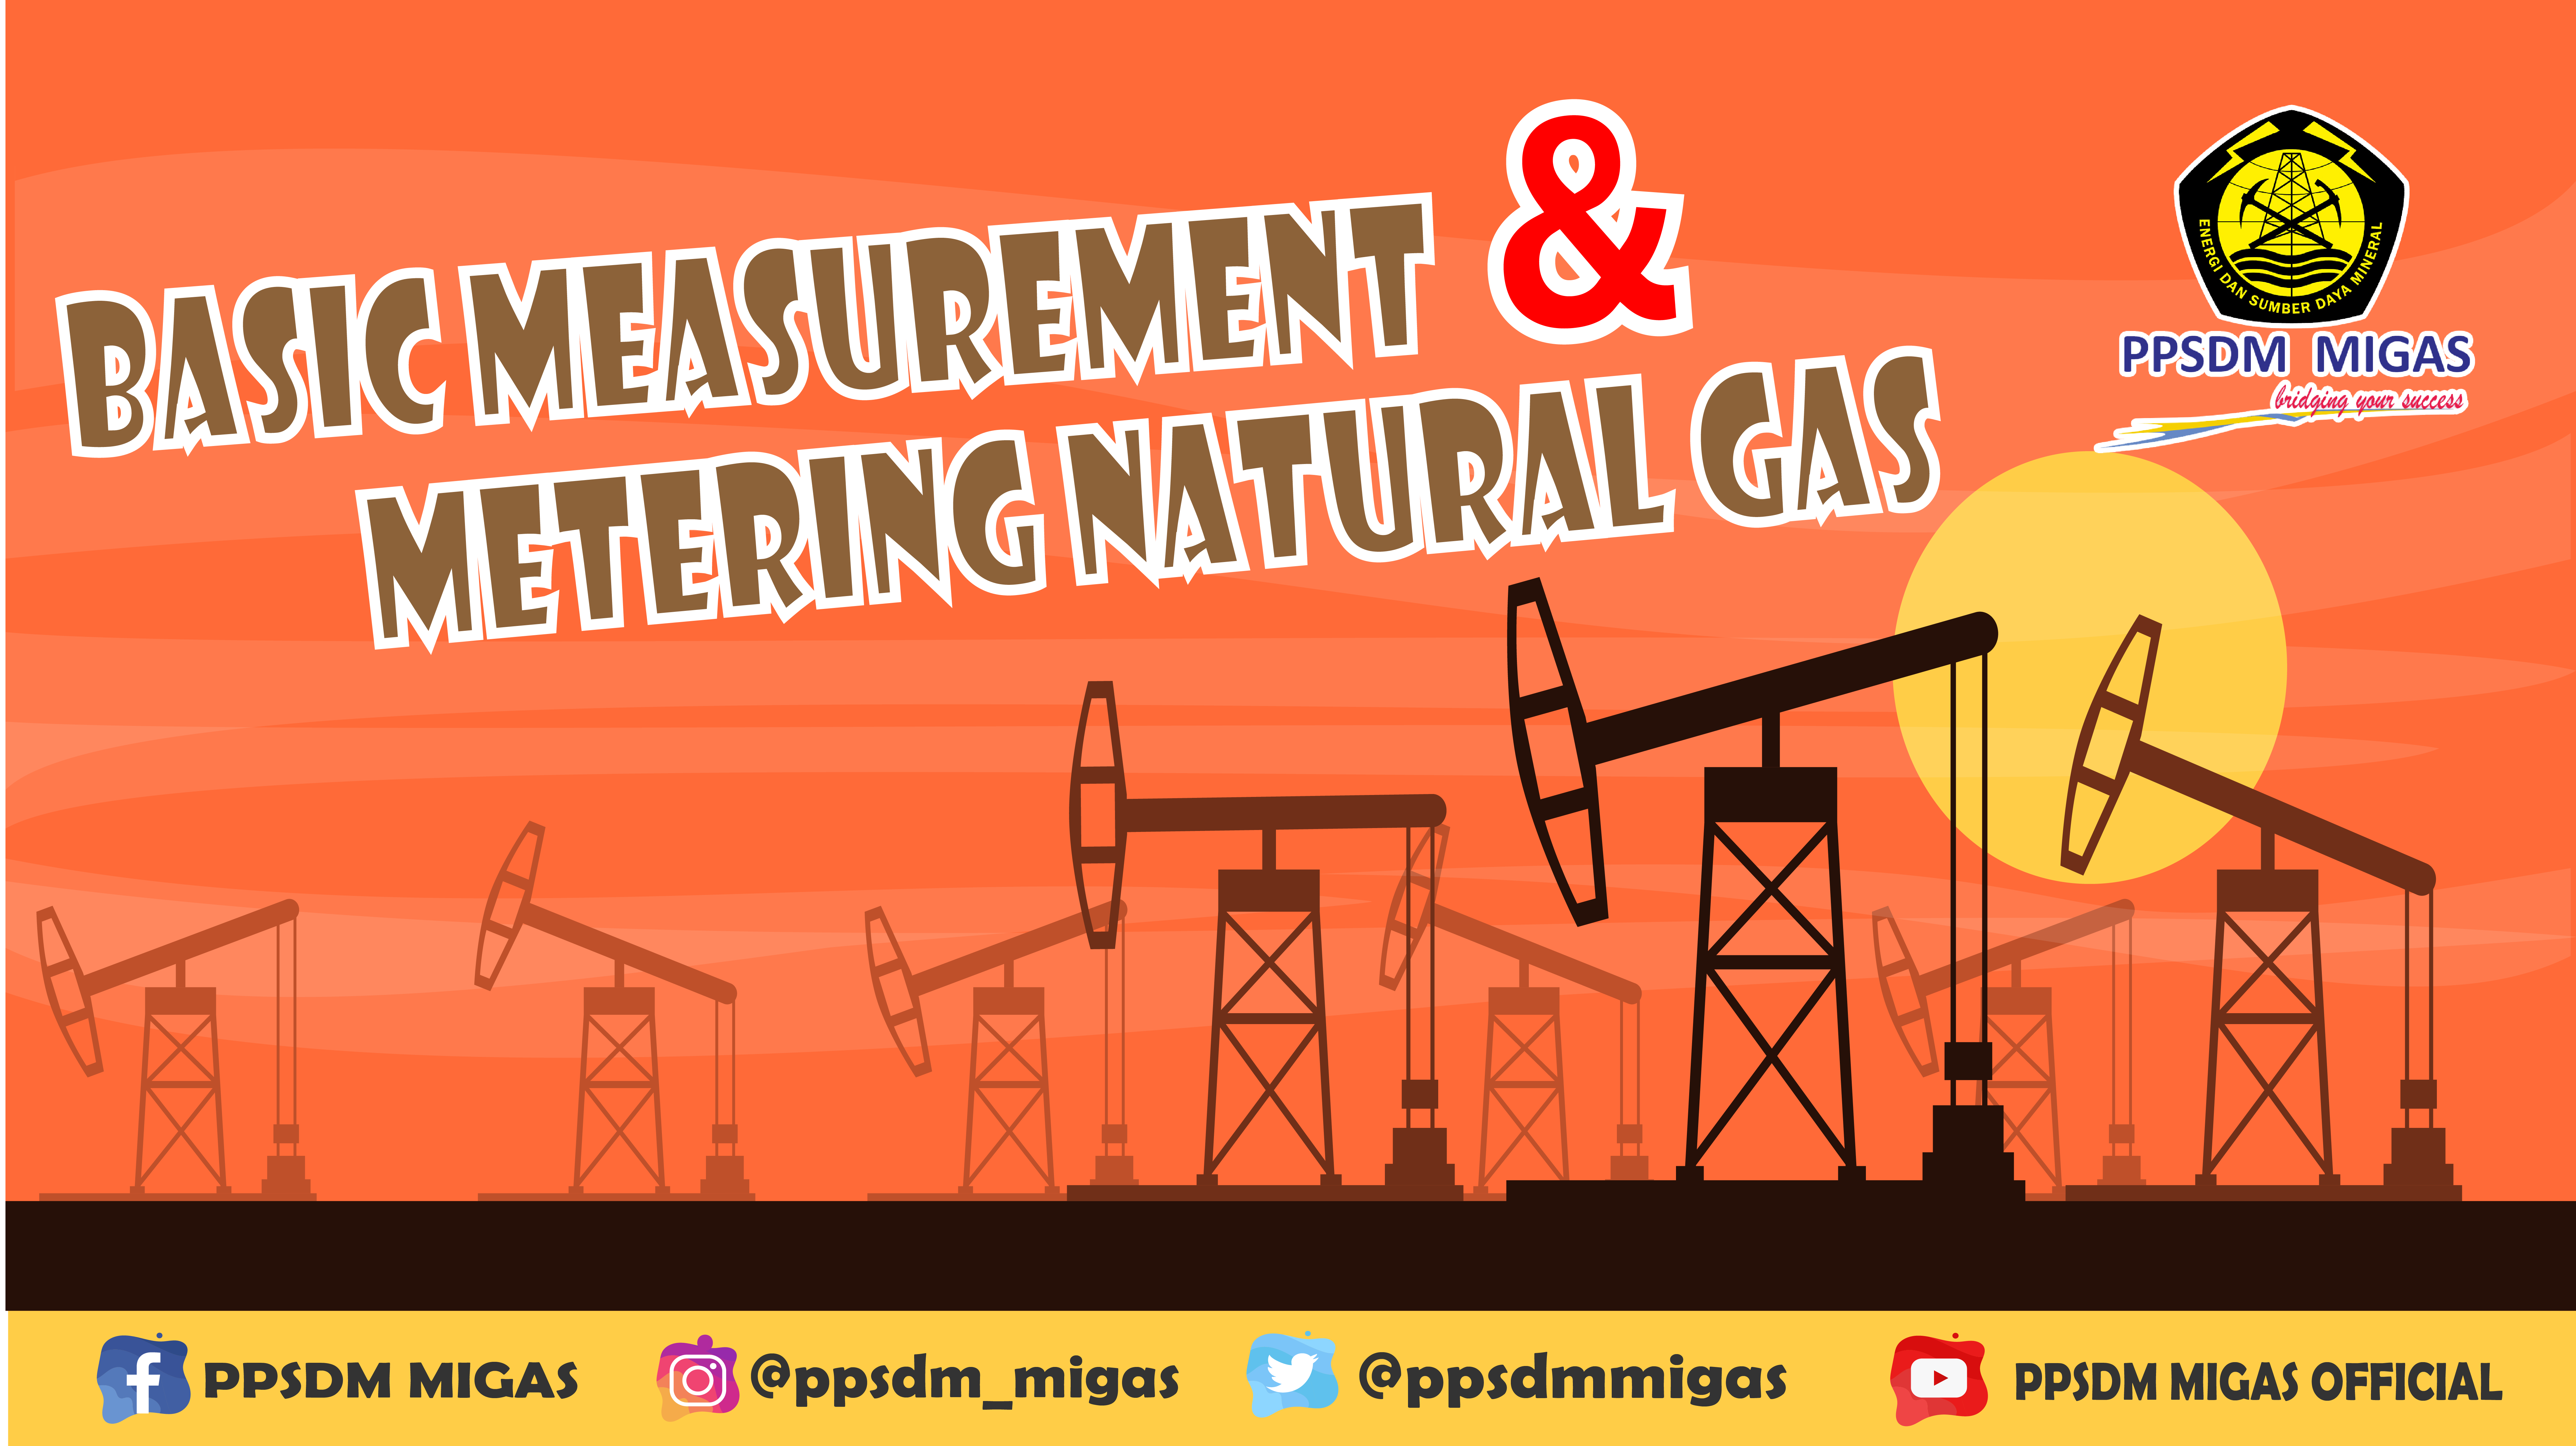 BASIC MEASURMENT & METERING NATURAL GAS